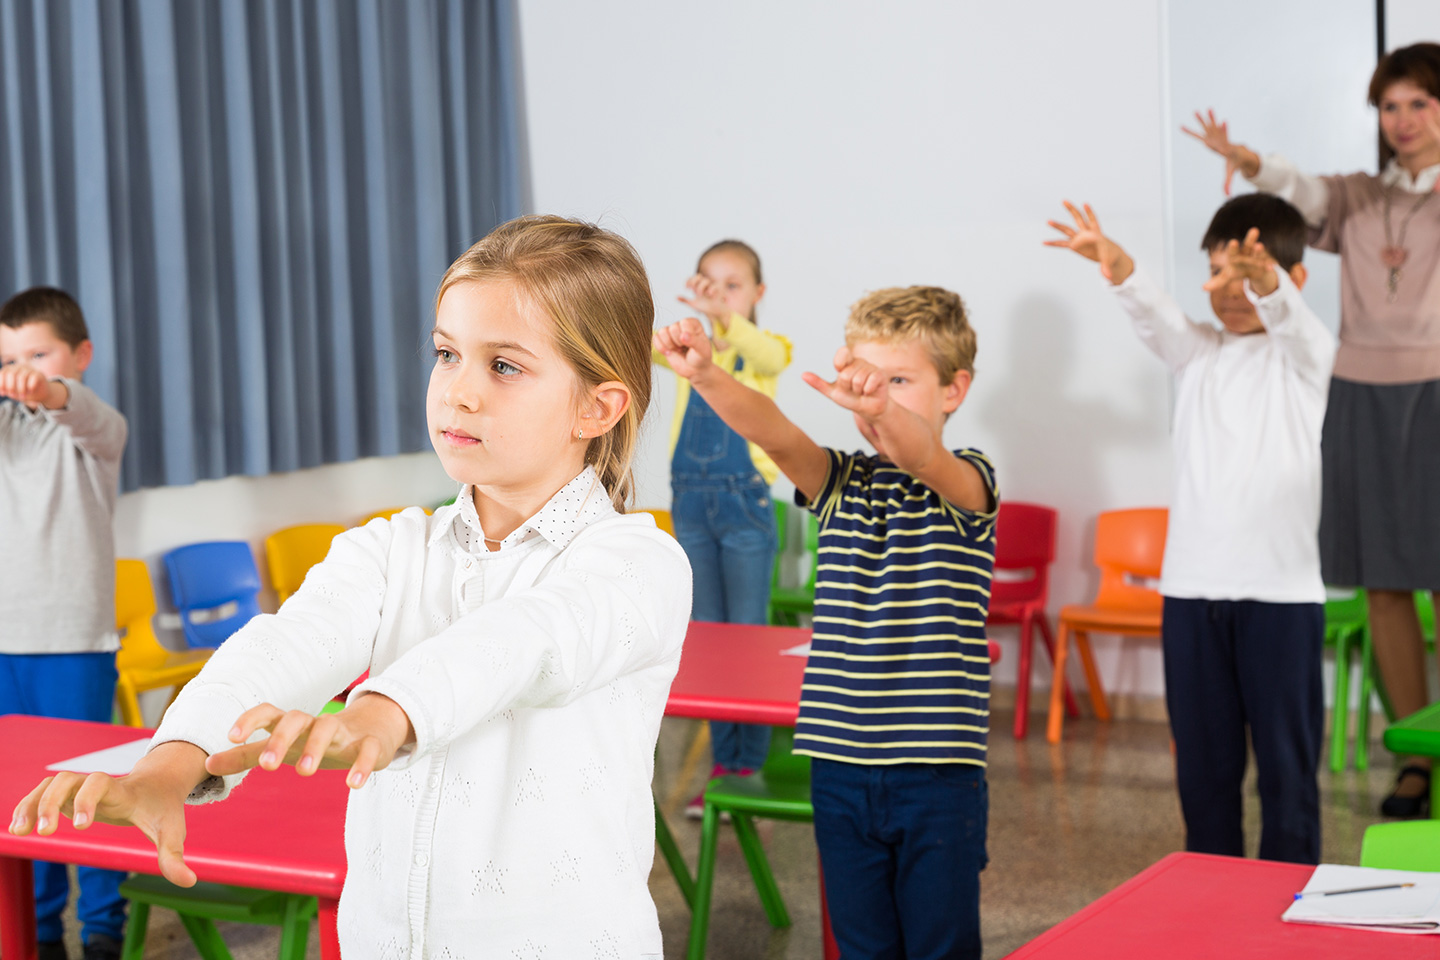 Bambini in classe - attività fisica